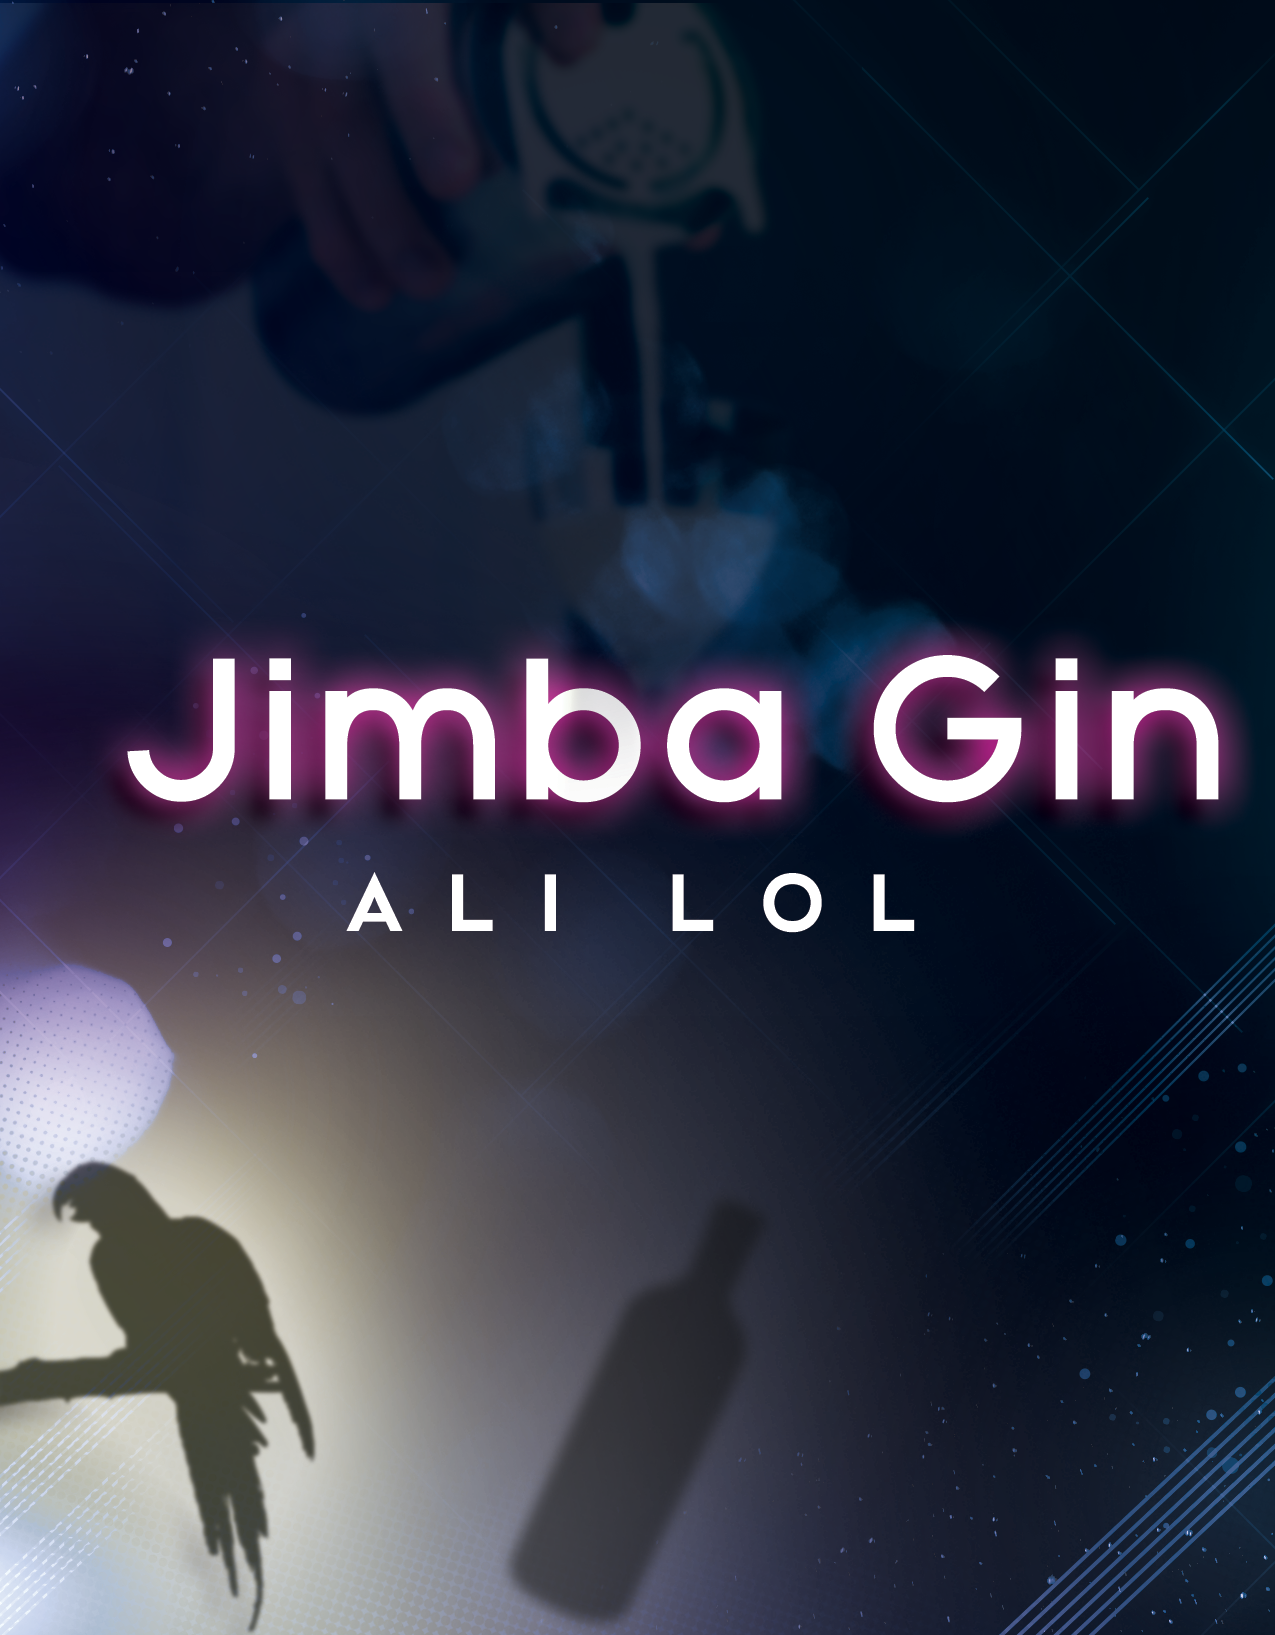 ALI LOL-Jimba Gin